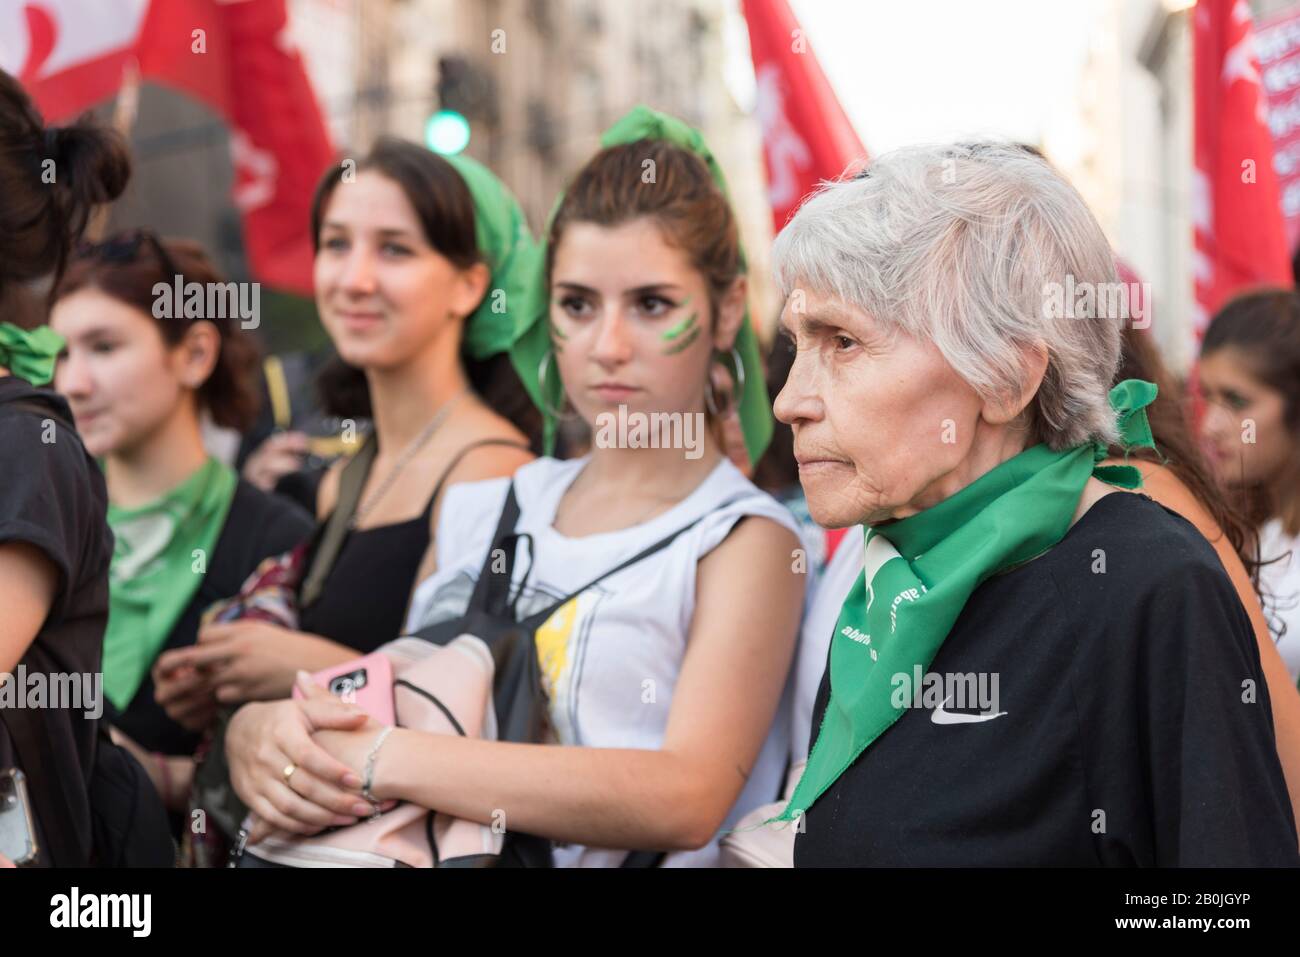 Buenos Aires / Argentina; 19 de febrero de 2020: Mujeres mayores y niñas juntas en una manifestación a favor del aborto legal Foto de stock